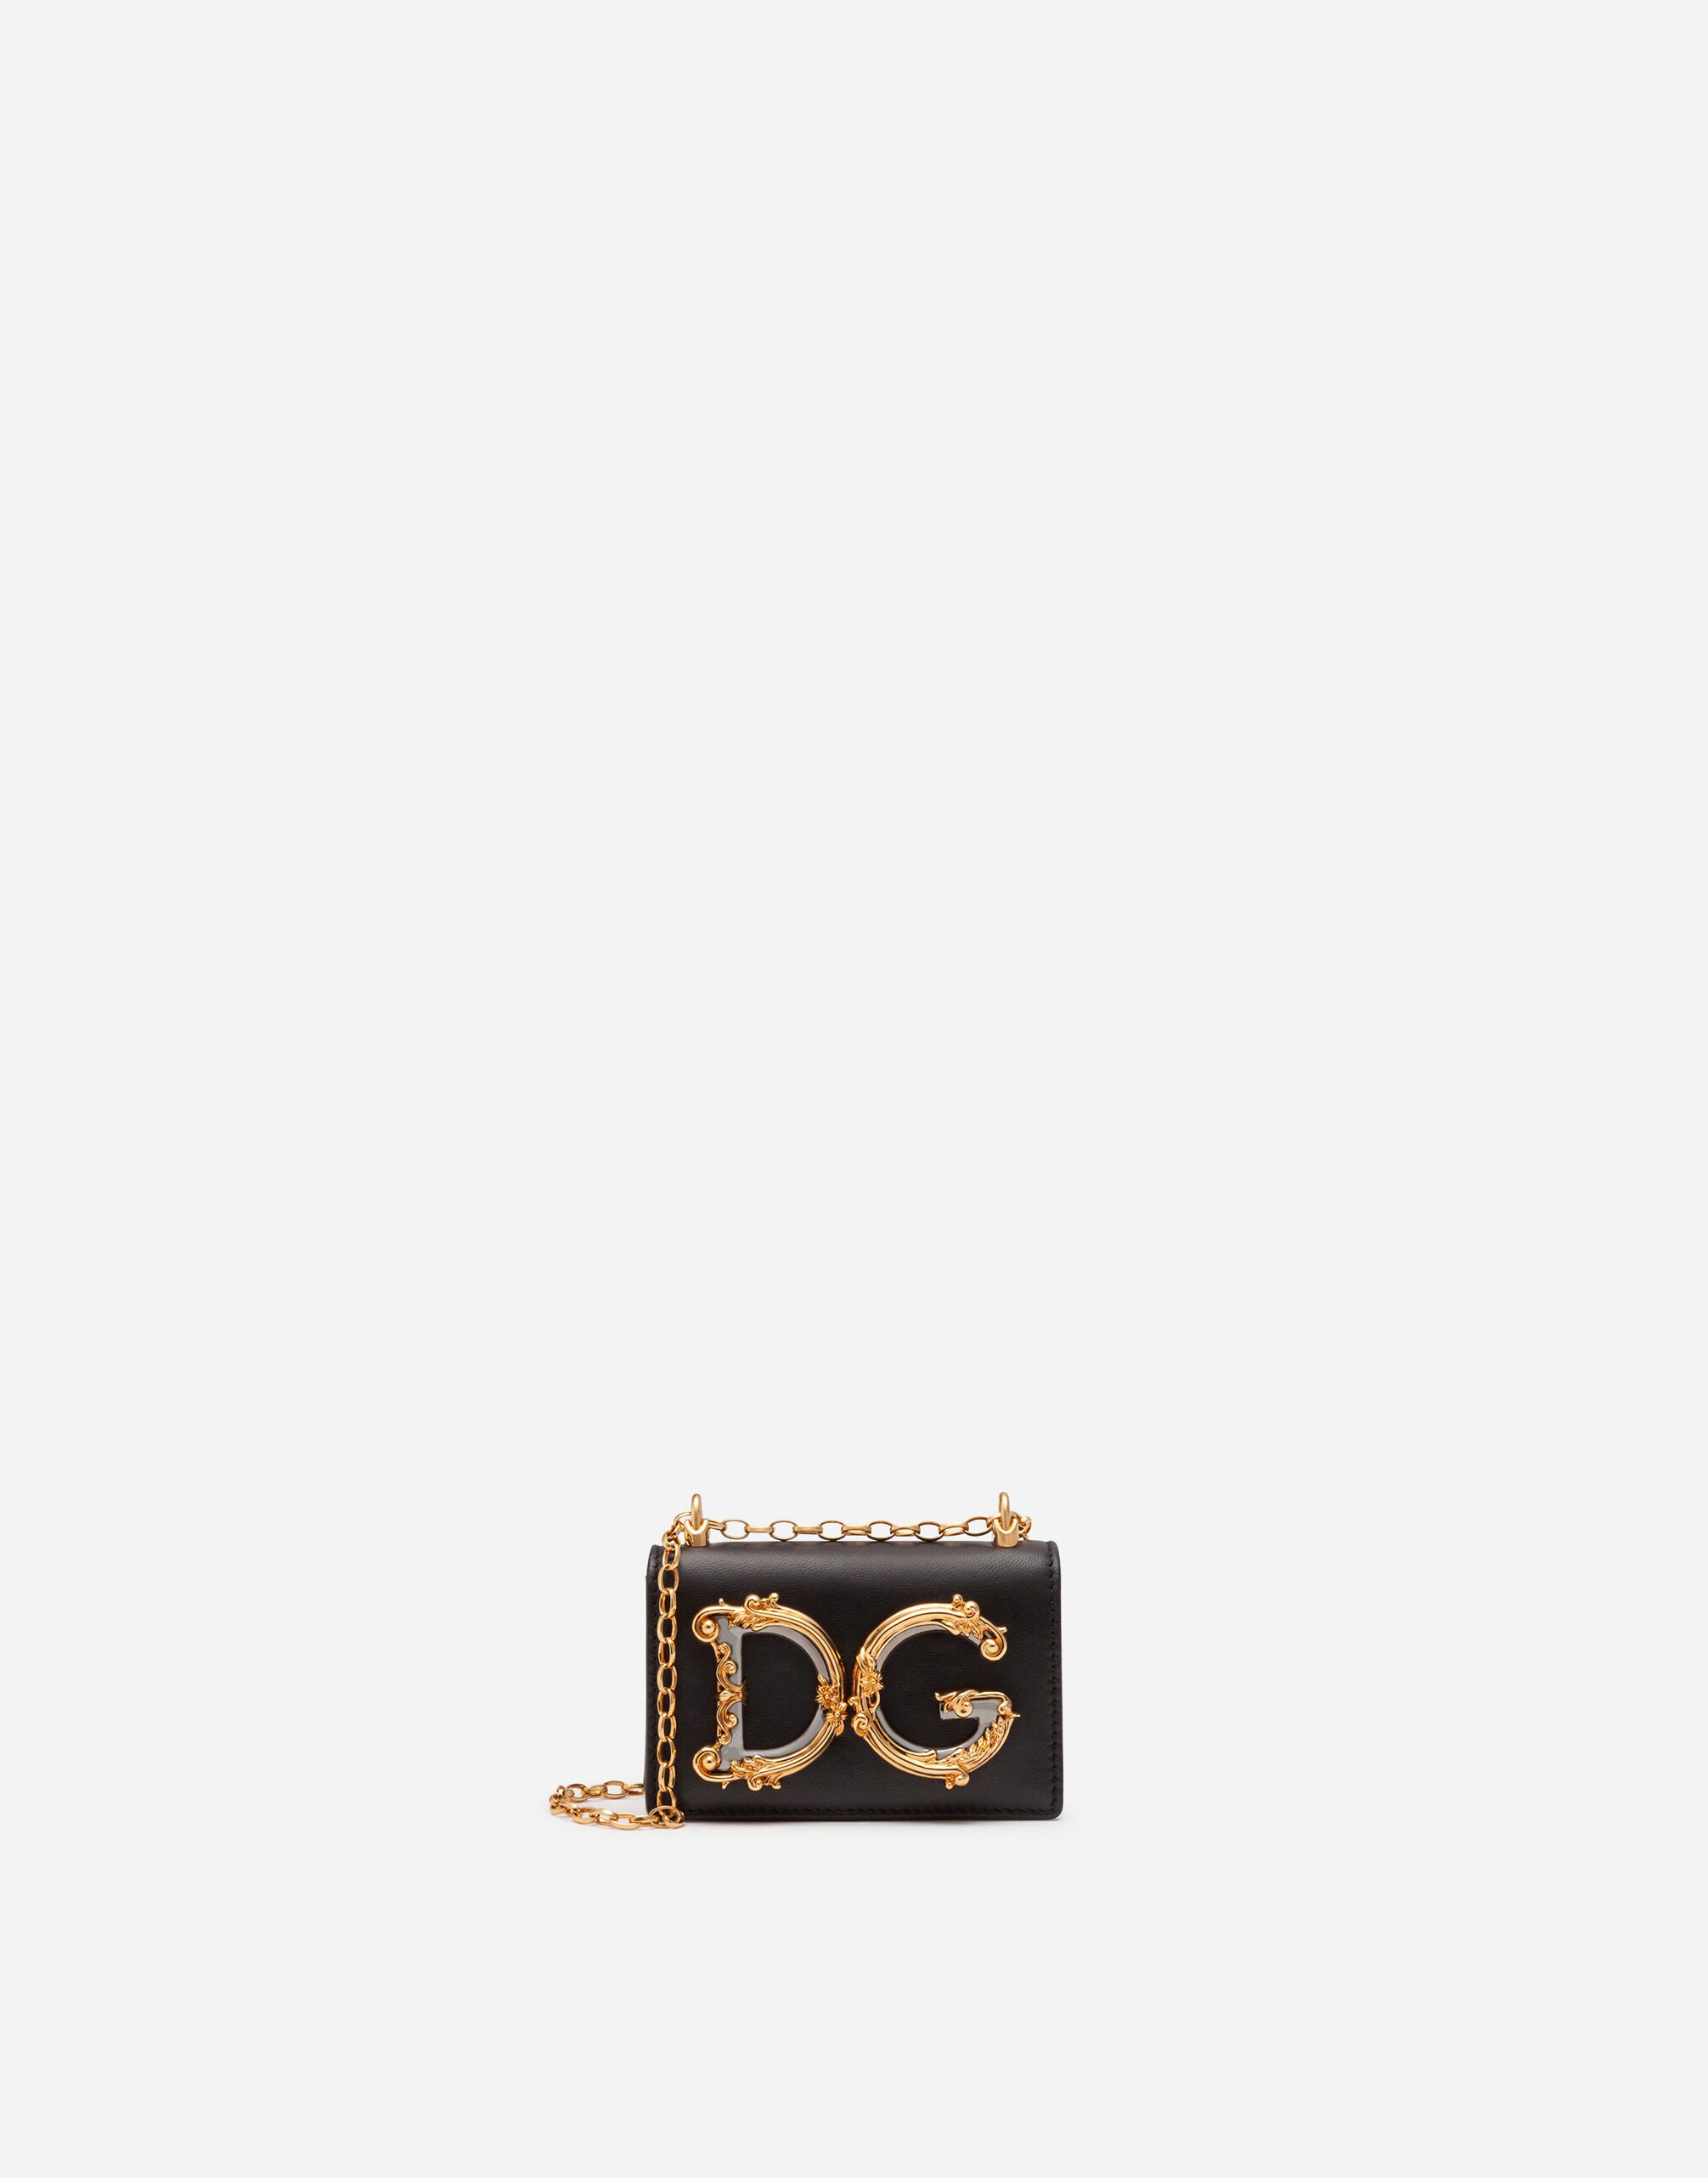 Dolce & Gabbana DG Girls micro bag in plain calfskin Red BB6651AV967